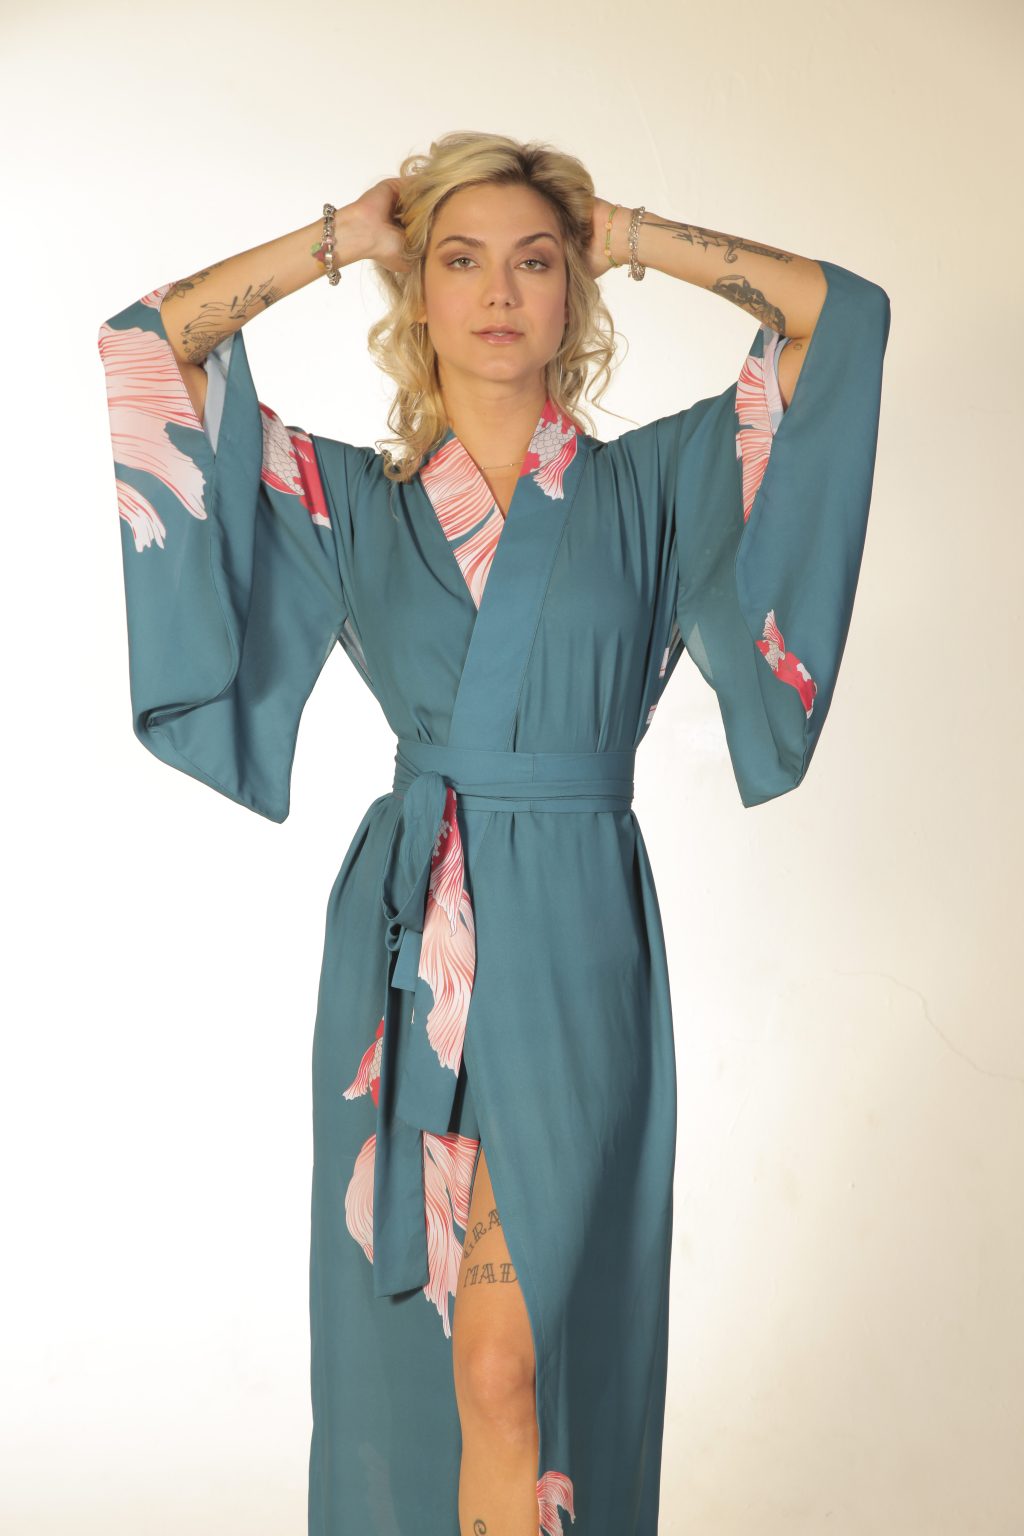 Mulher loira usando um kimono longo manga longa faixa na cintura estampa exclusiva com carpas leveza conforto praticidade maria sanz kimono quimono